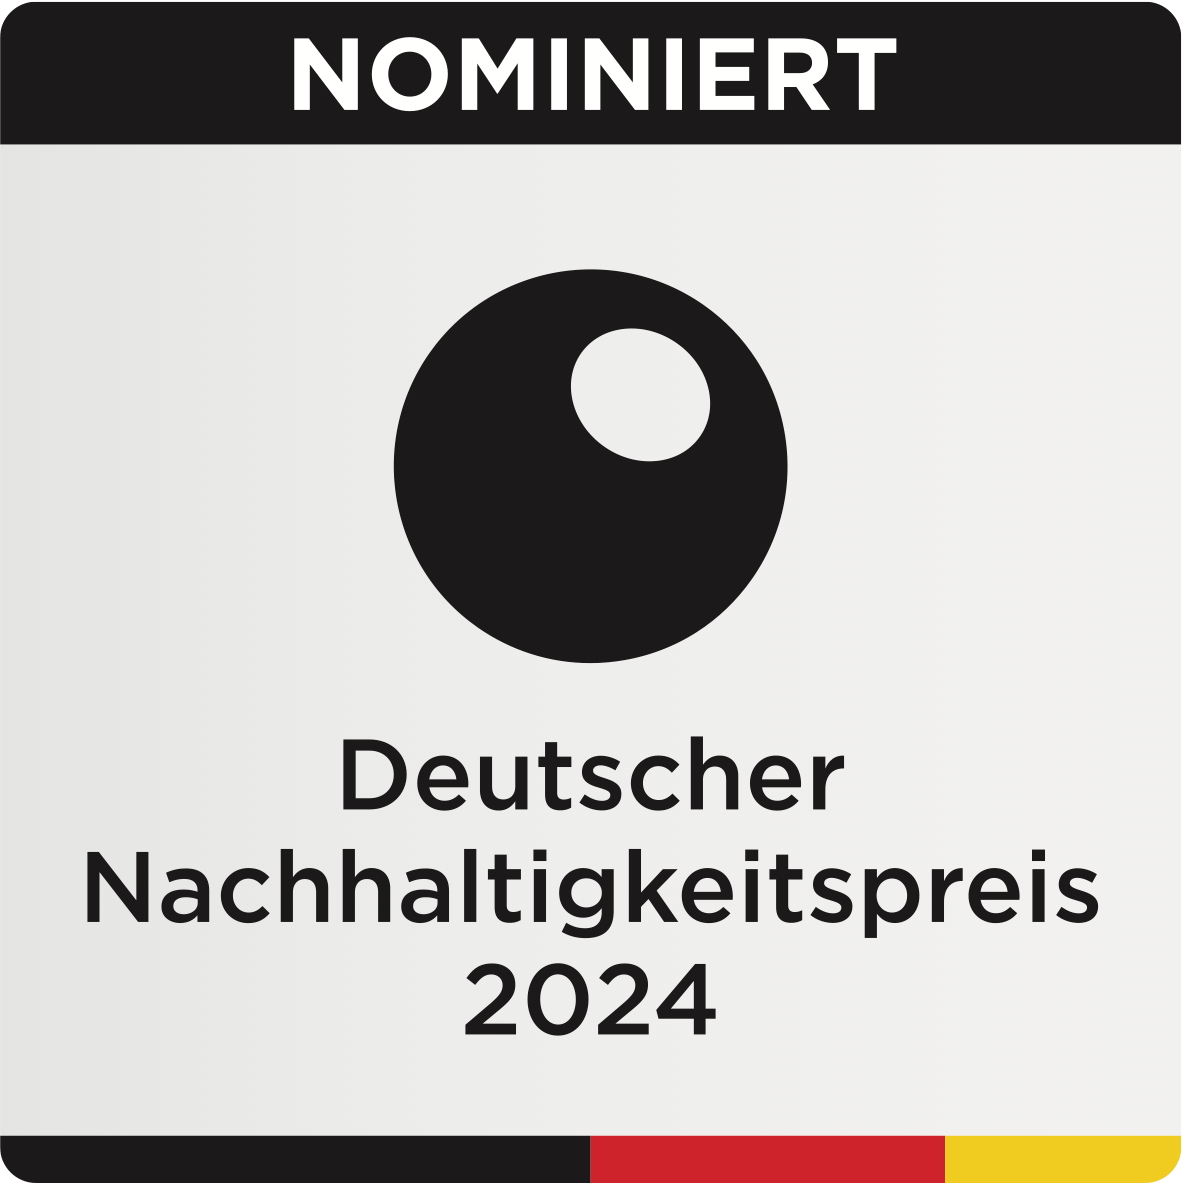 Deutscher Nachhaltigkeitspreis Nominierung 2024